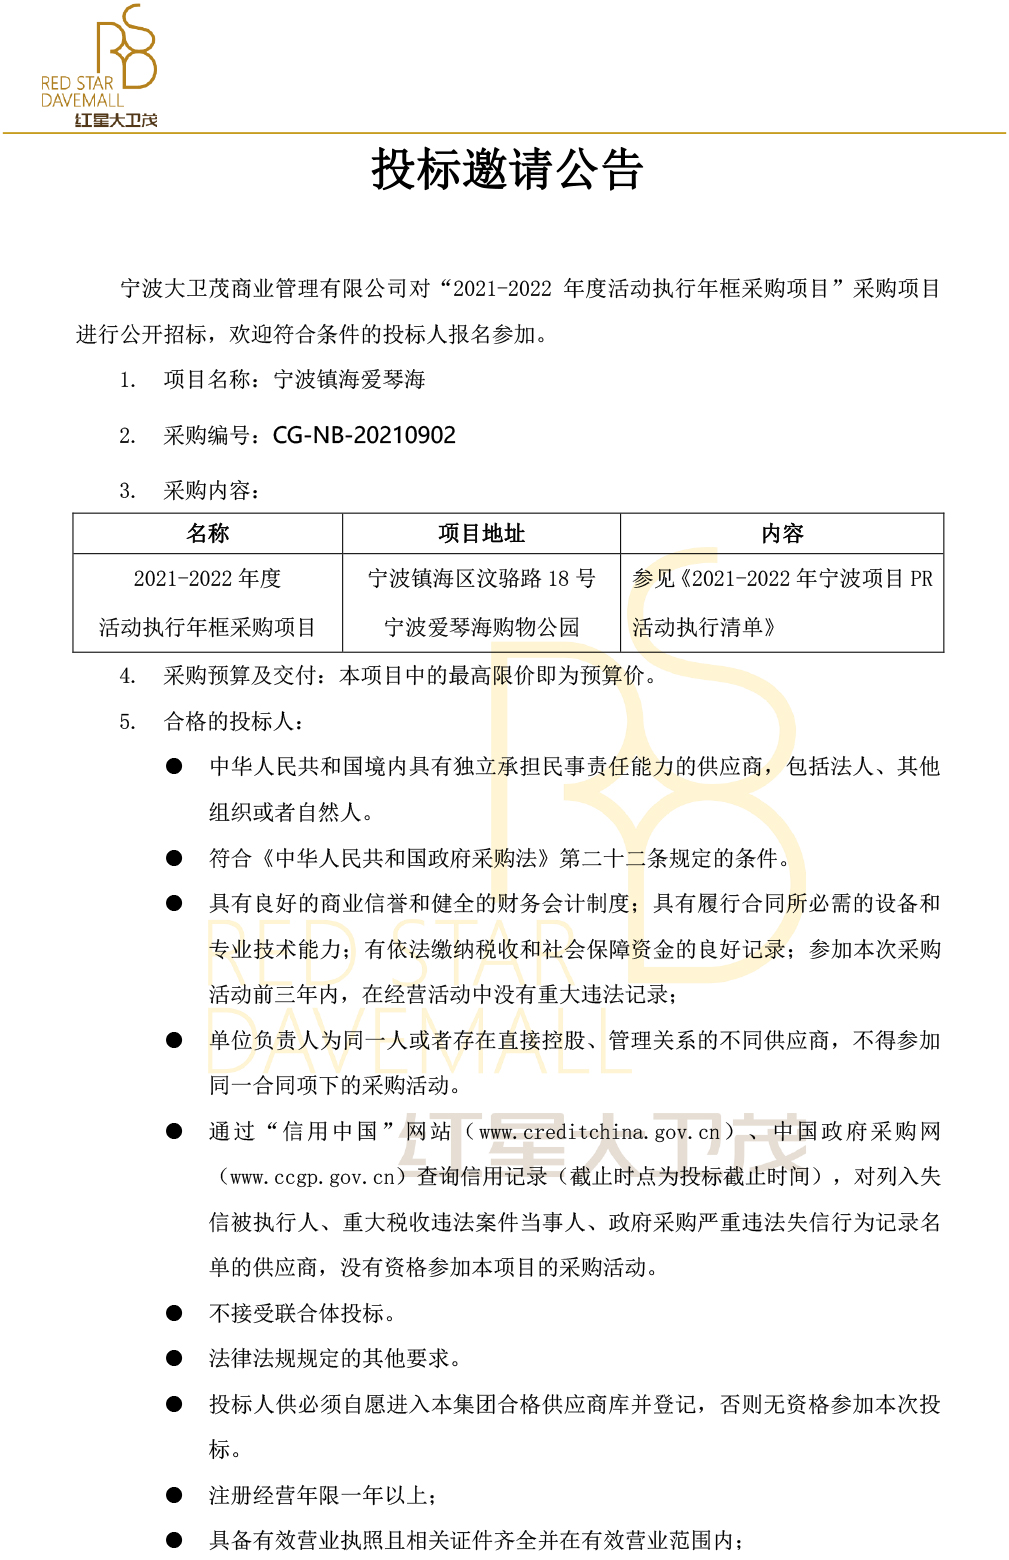 【宁波】2021-2022年度活动执行年框采购项目(图1)